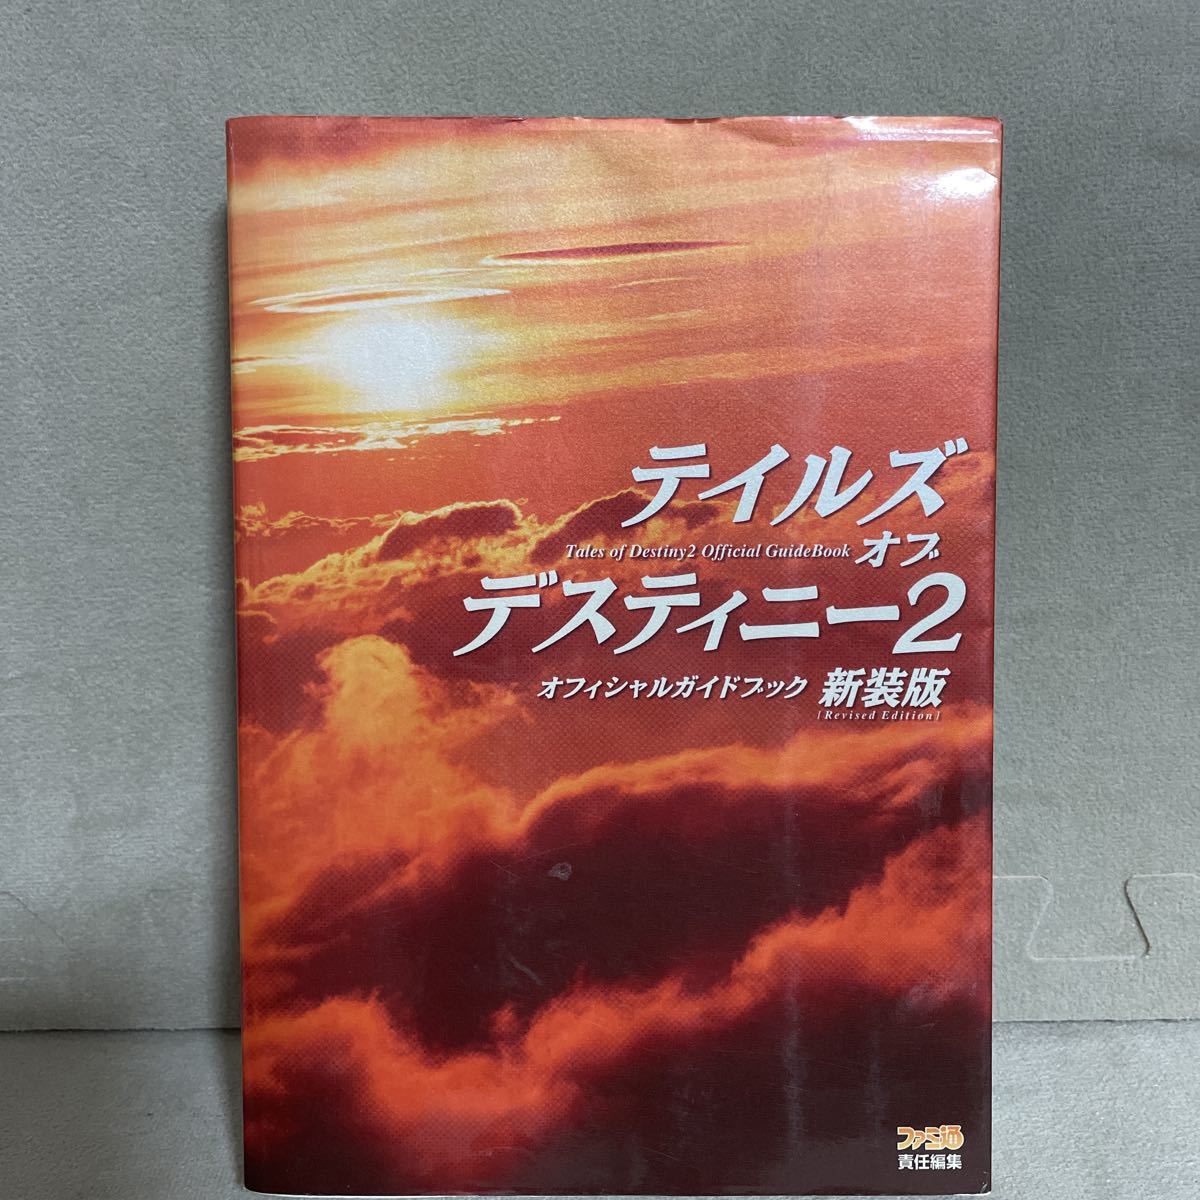 KSH39 PSP テイルズ オブ デスティニー2 オフィシャルガイドブック 新装版